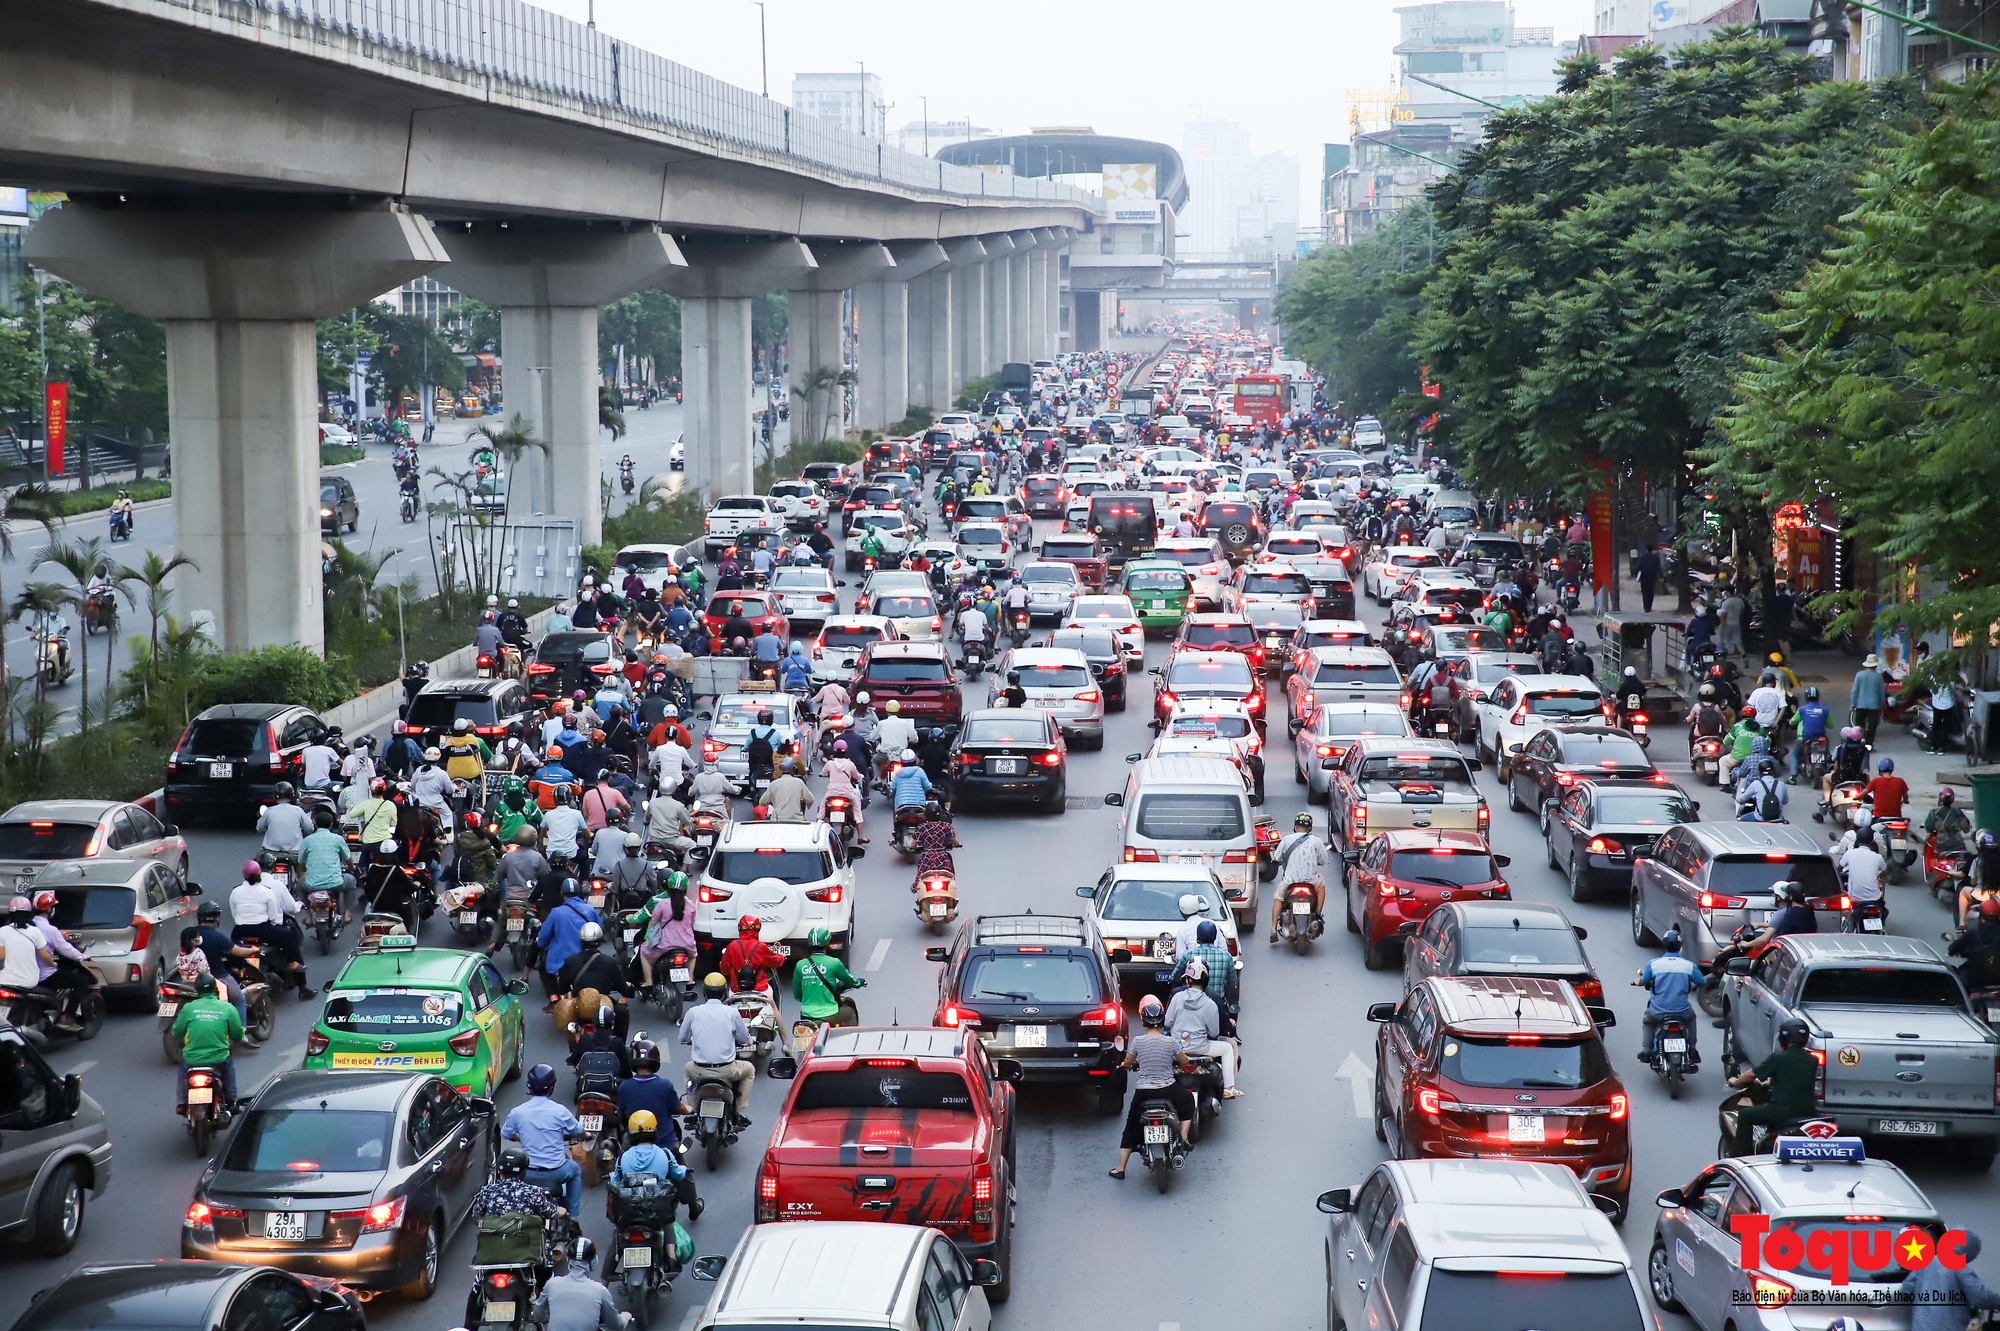 Hà Nội: Giao thông lộn xộn trên đường Nguyễn Trãi sau phân làn mới - Ảnh 2.